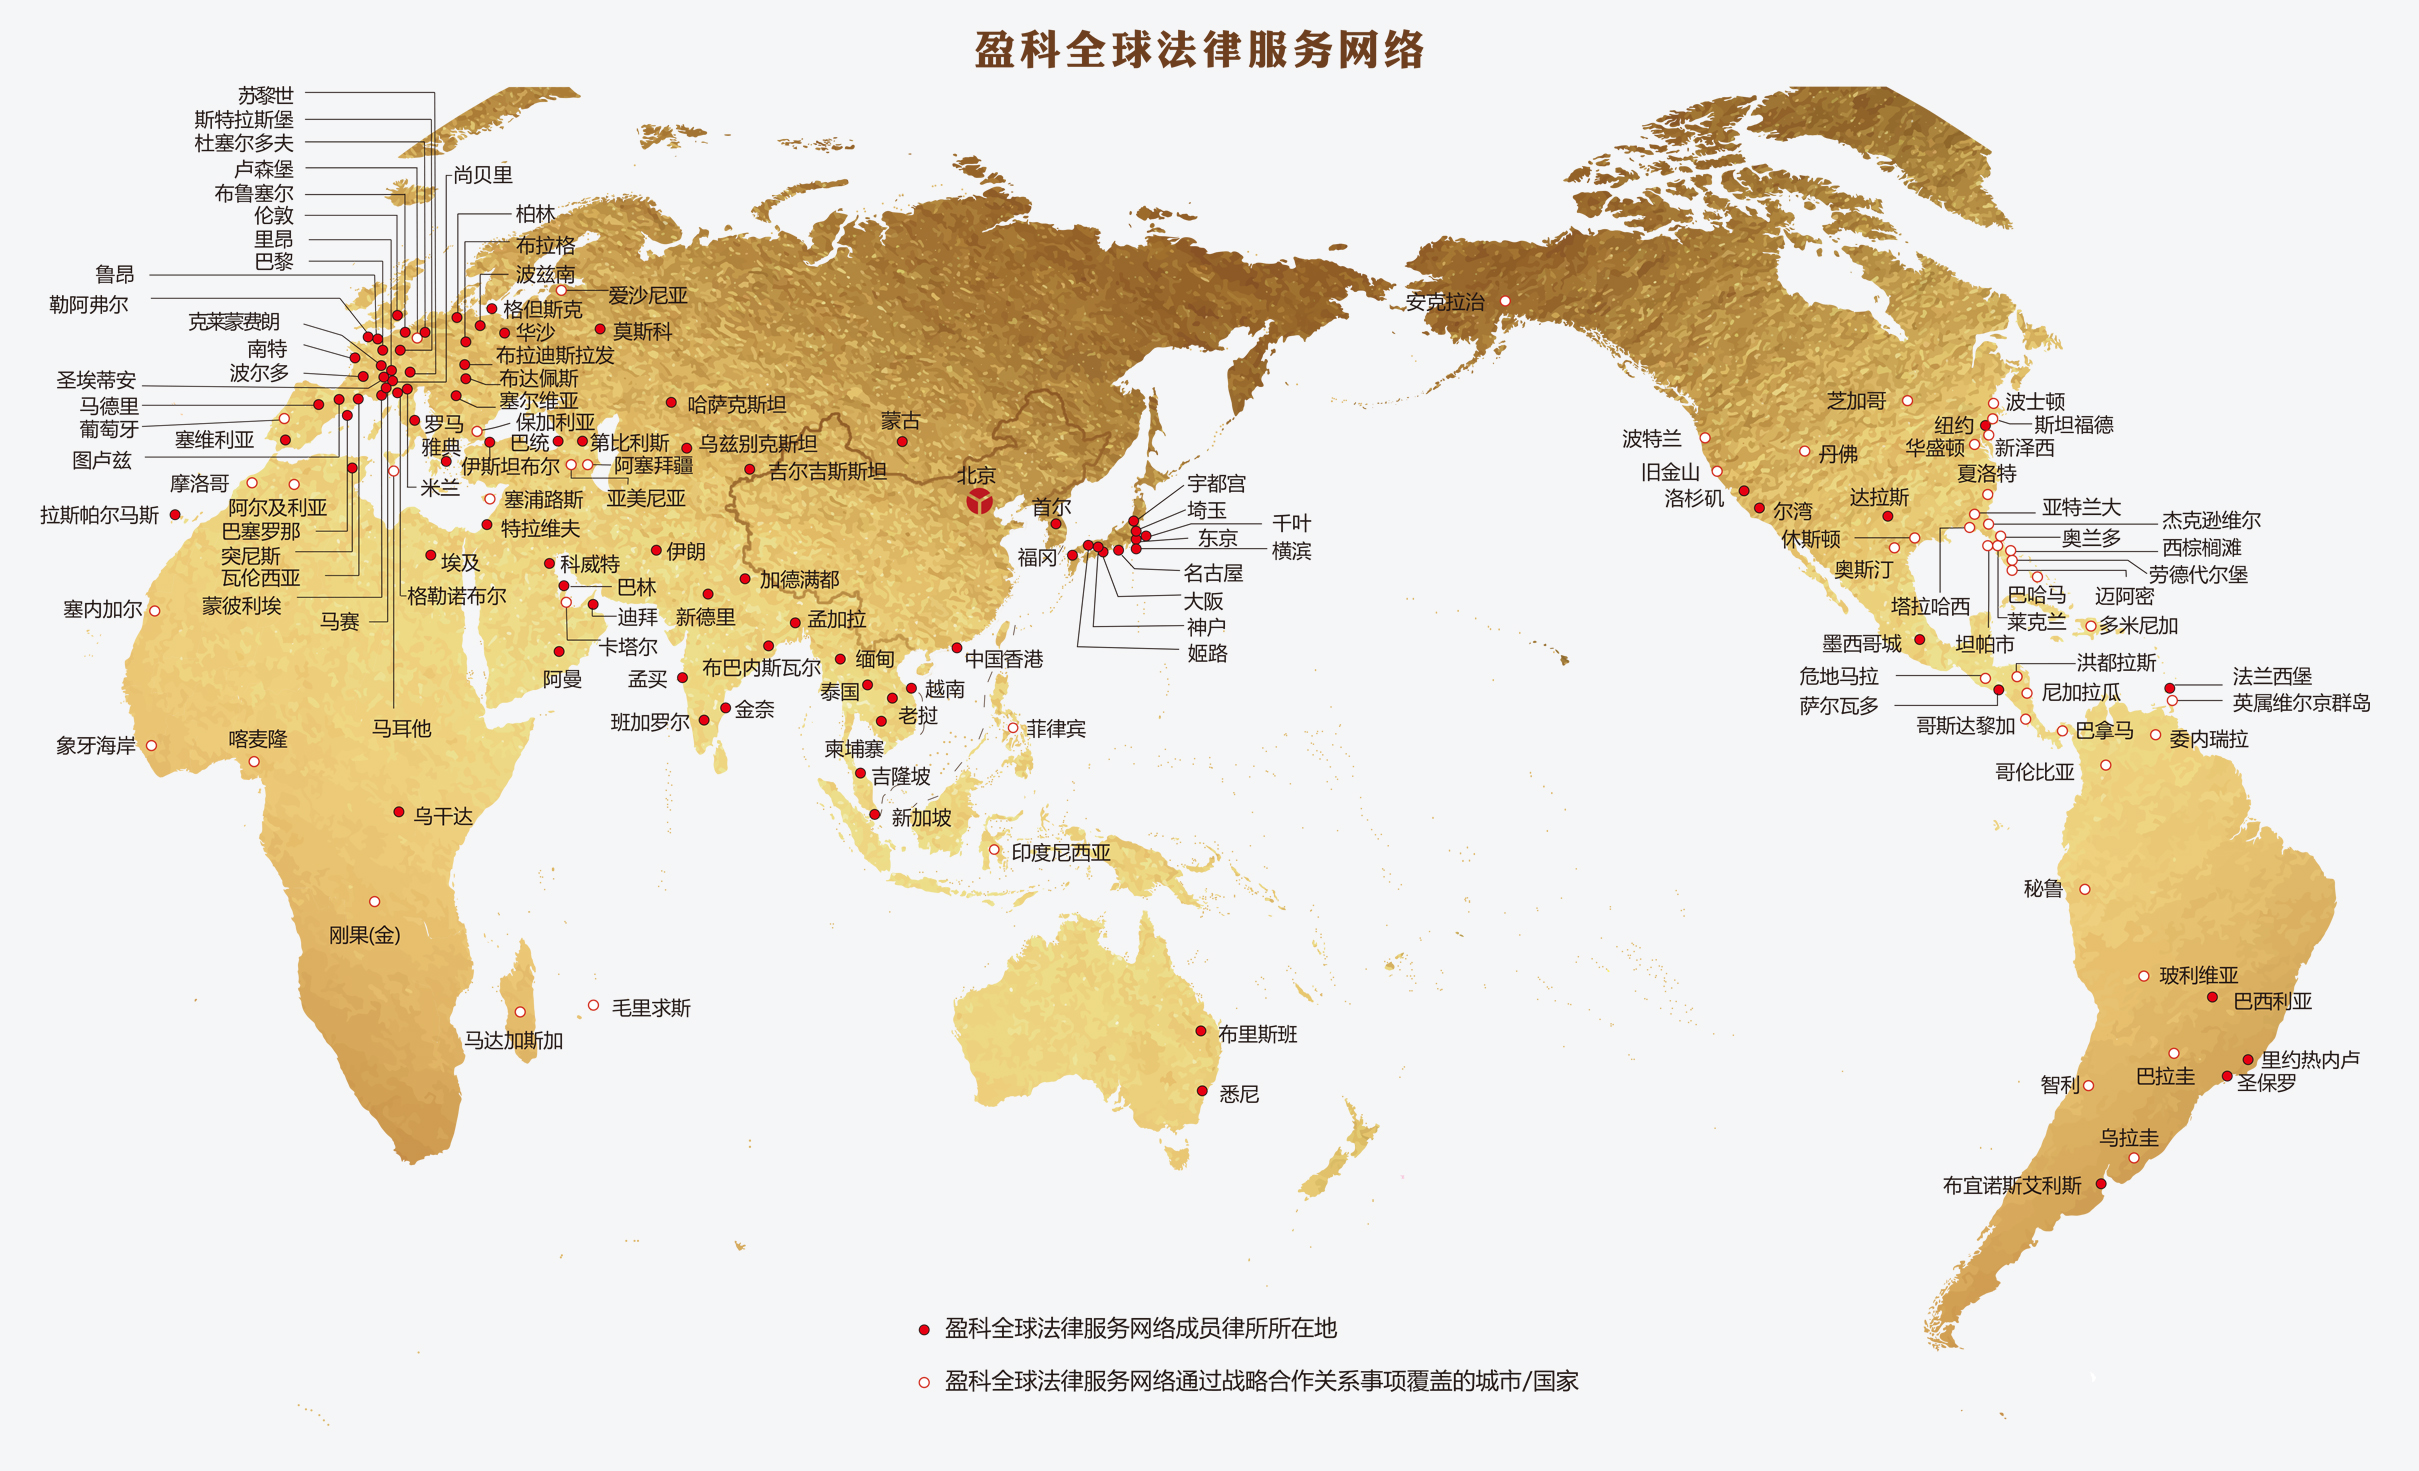 盈科全球法律服务网络图